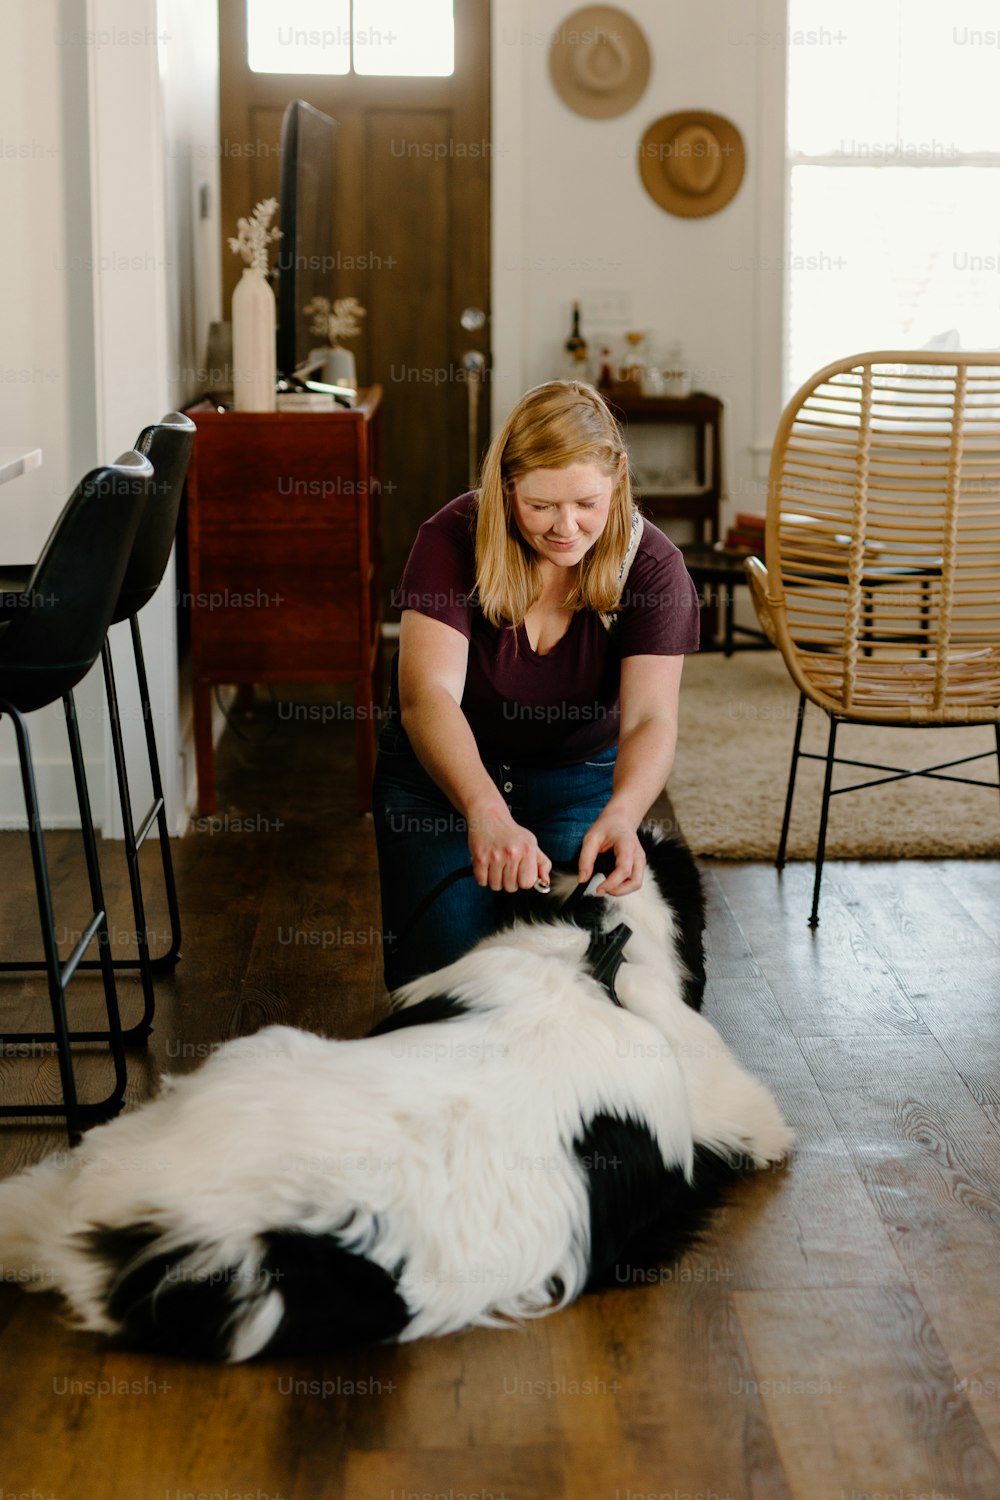 Una mujer sentada en el suelo acariciando a un perro blanco y negro